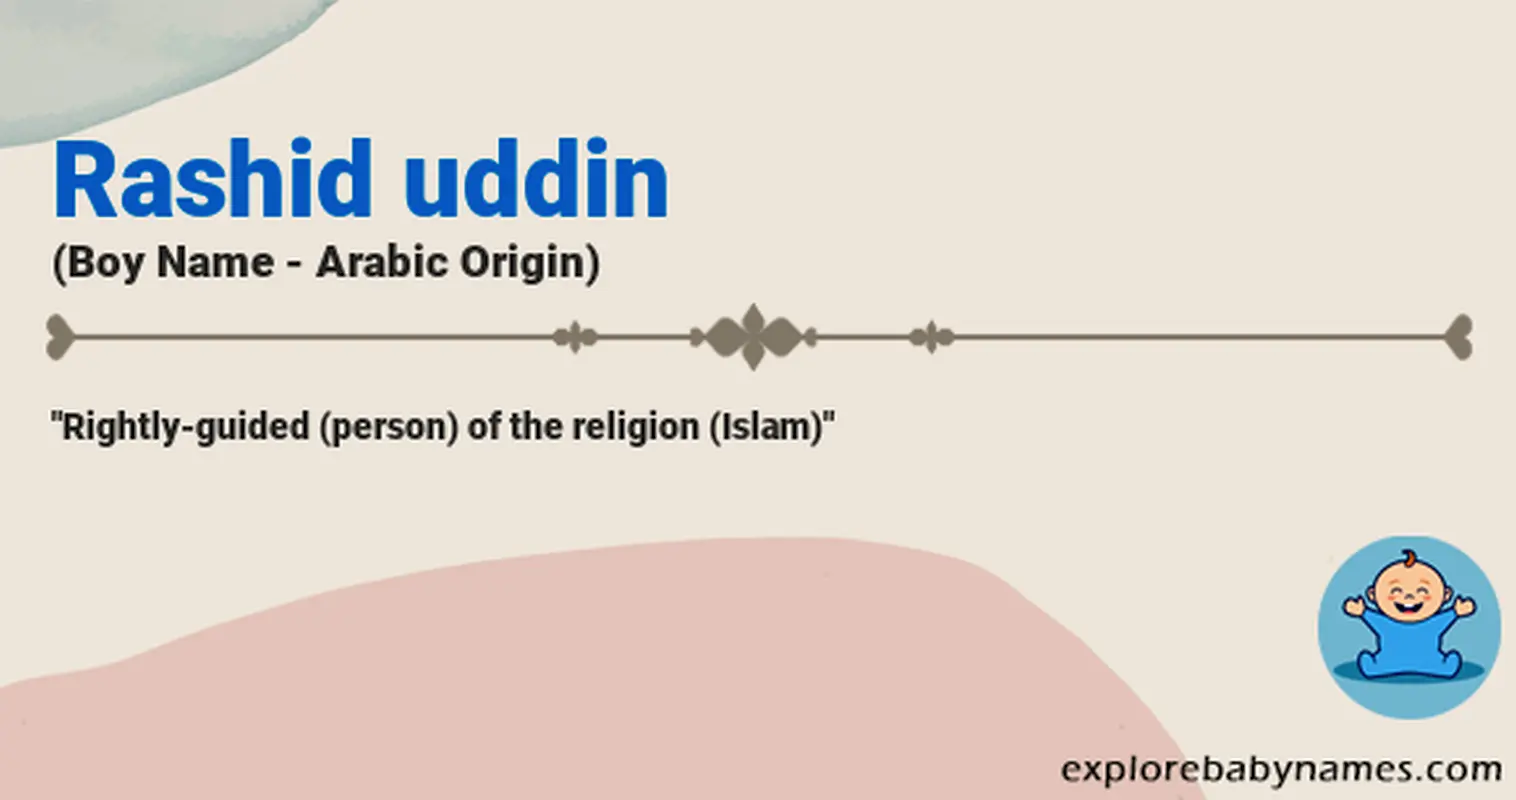 Meaning of Rashid uddin